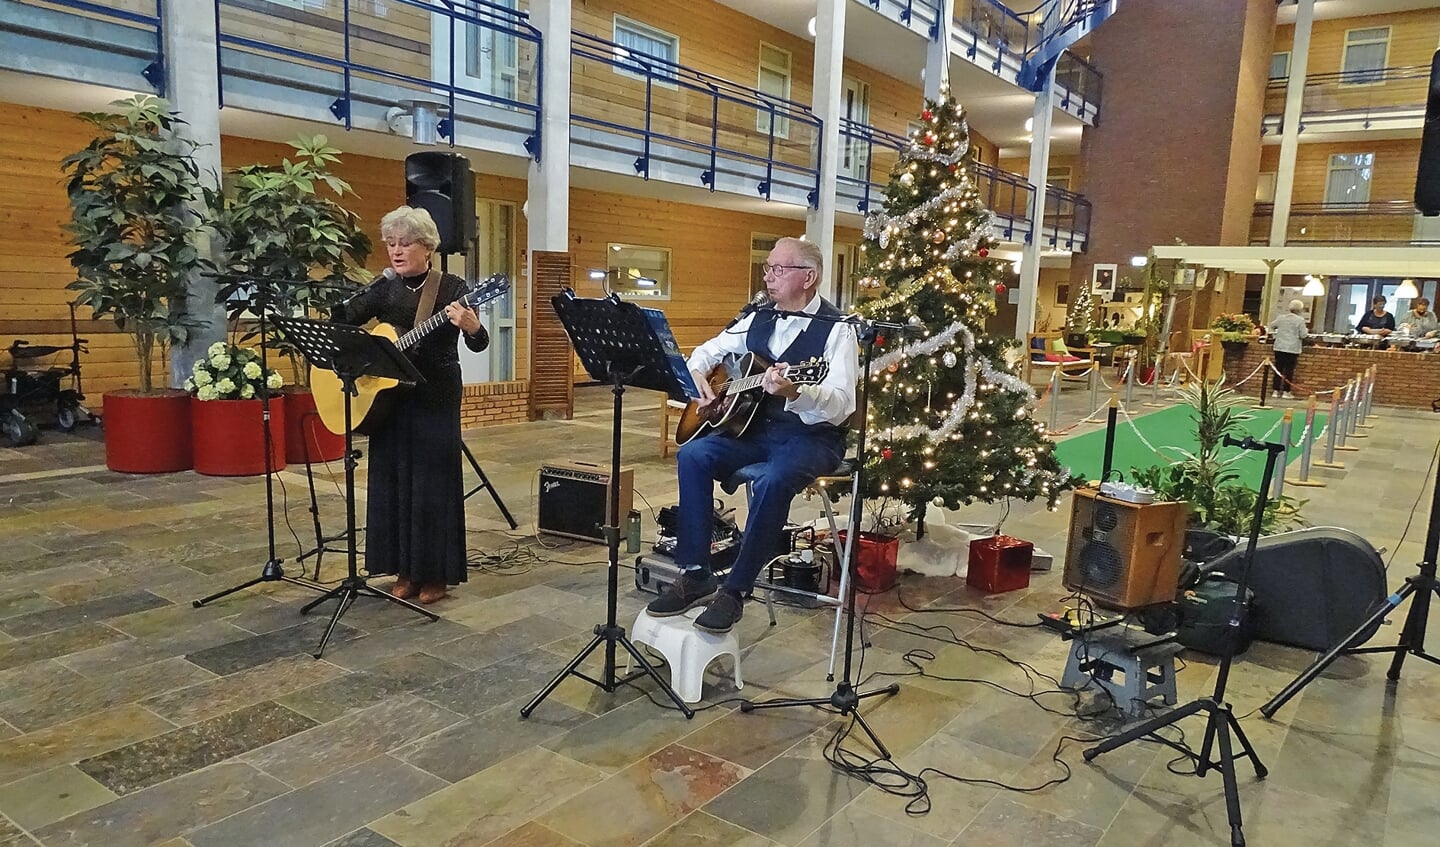 Live muziek tijdens het kerstdiner in het Hof van Stein.